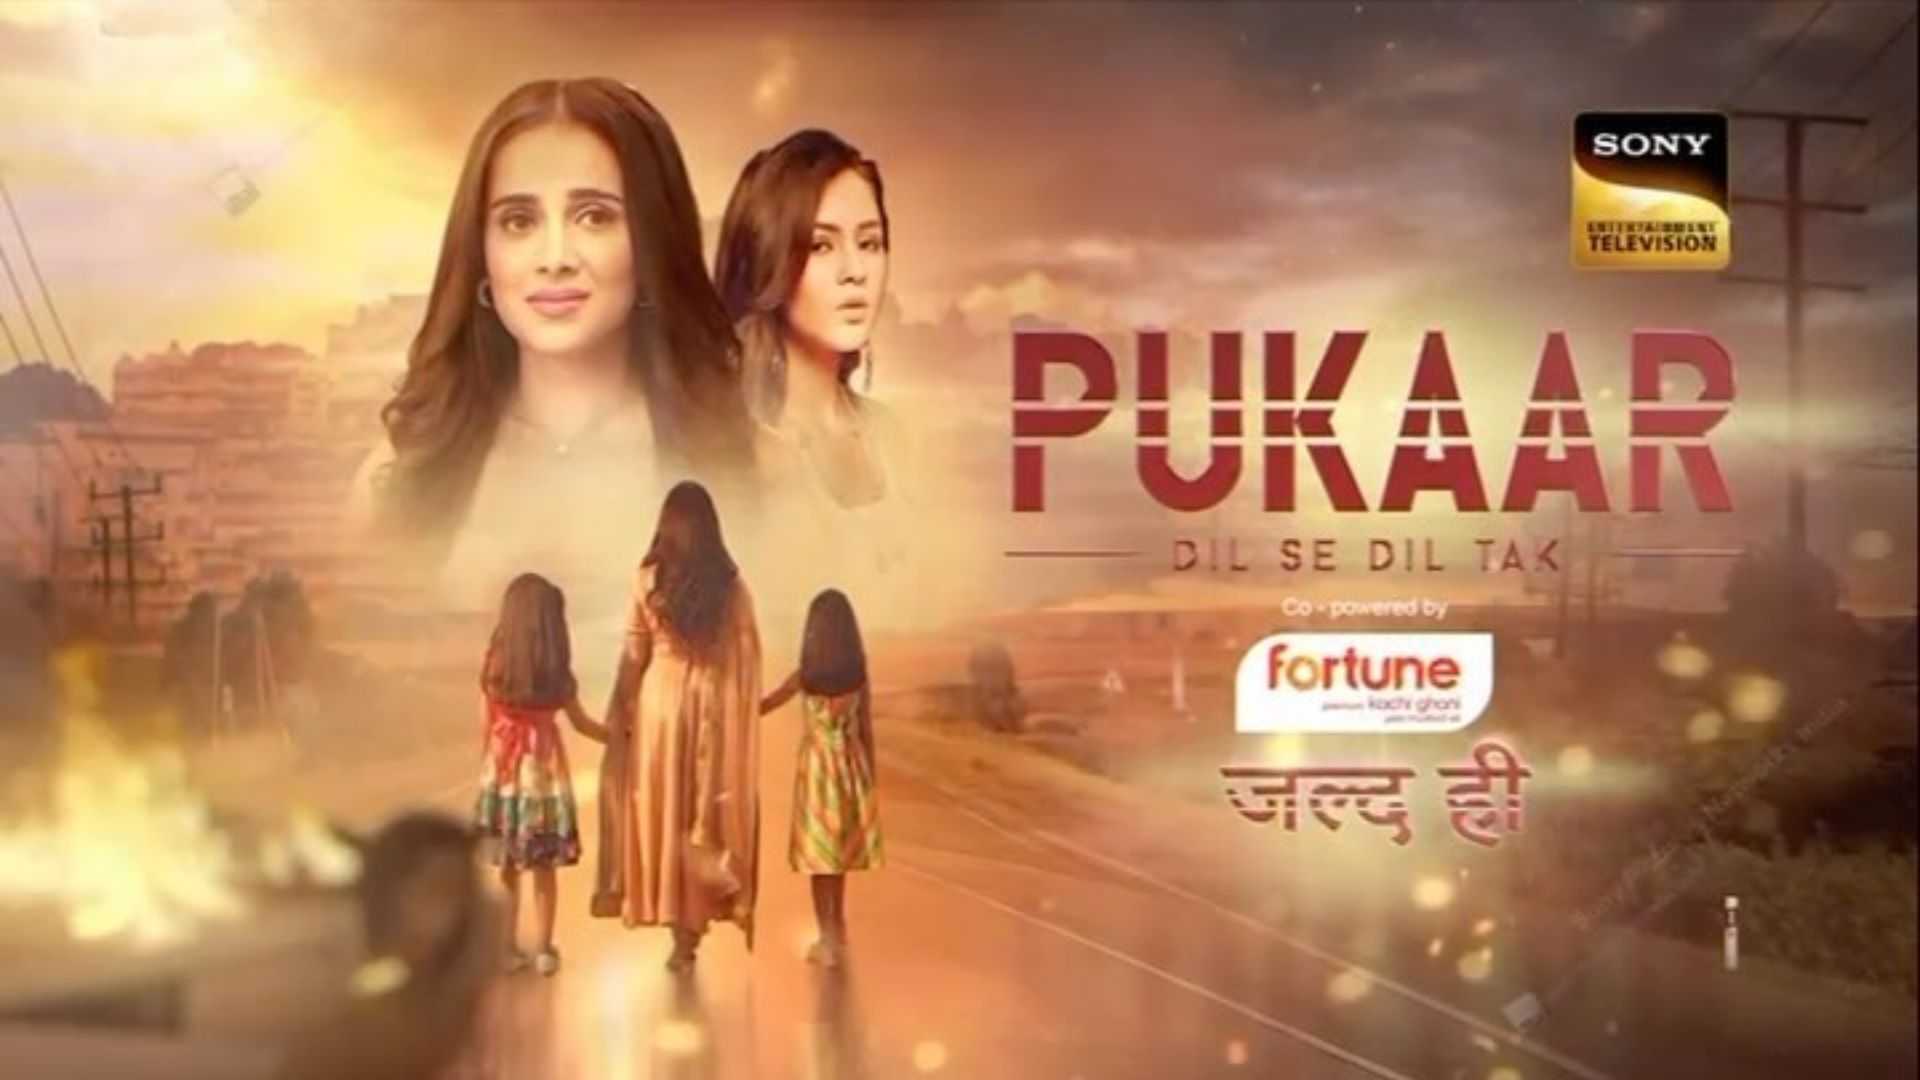 Pukaar - Dil Se Dil Tak: एक बार फिर से फैंस को लव डोज देगा सोनी टीवी का नया शो, पहले प्रोमो ने मचाया हंगामा